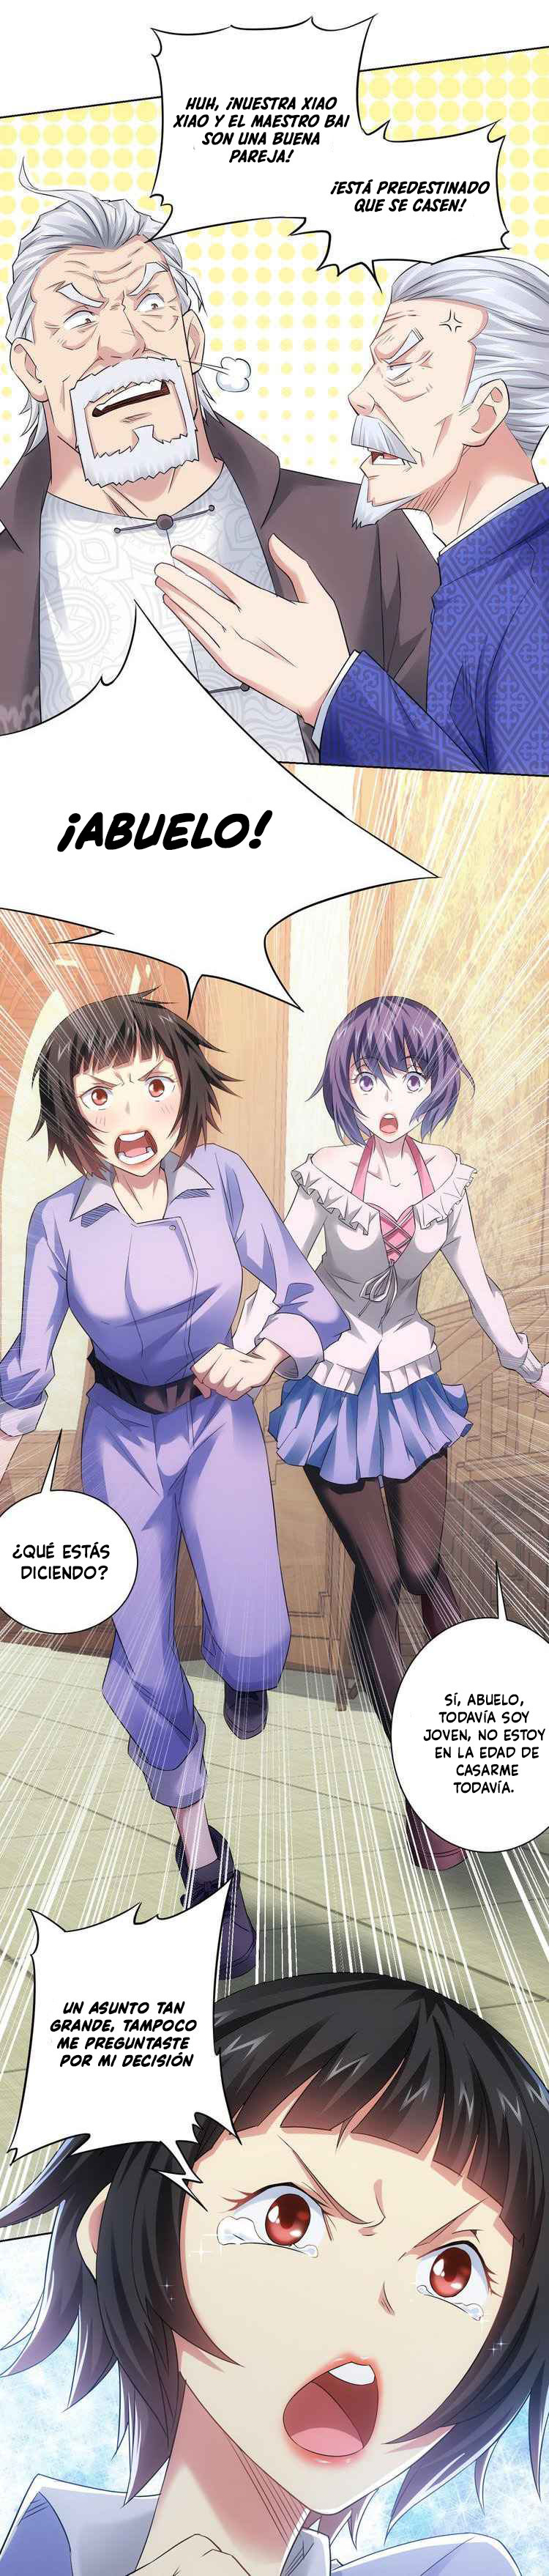 Manga Puedo ver la tasa de exito Chapter 43 image number 17